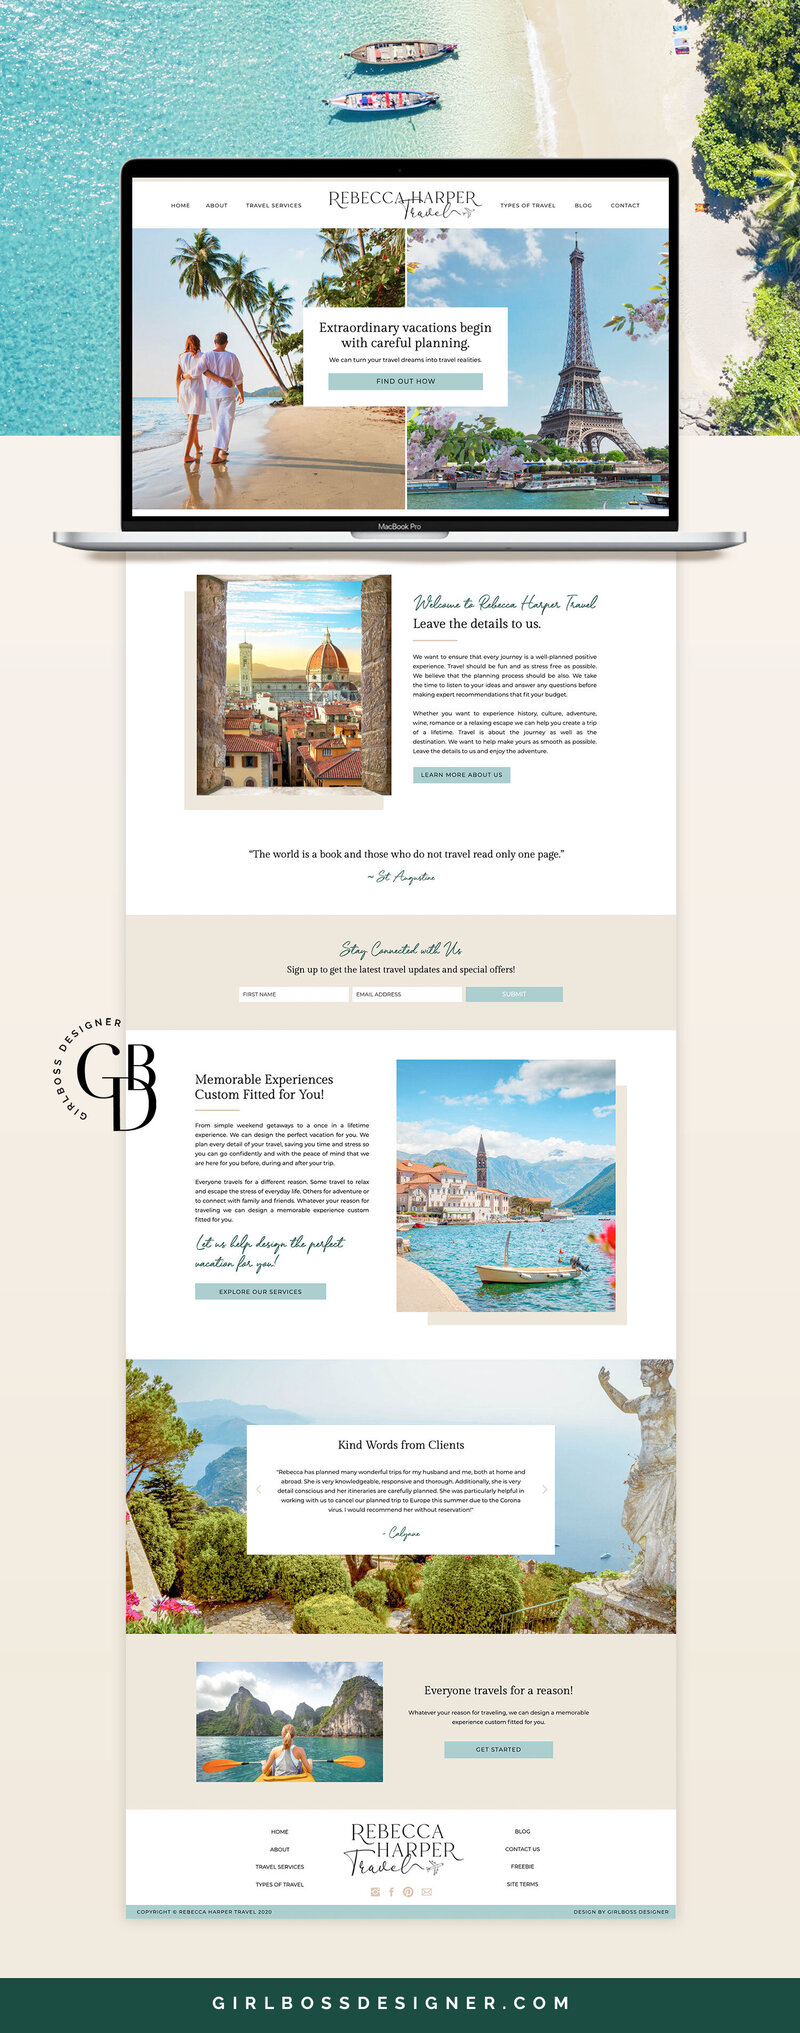 Girlboss-Designer-Rebecca-Harper-Travel-Advisor-Website-Design-2